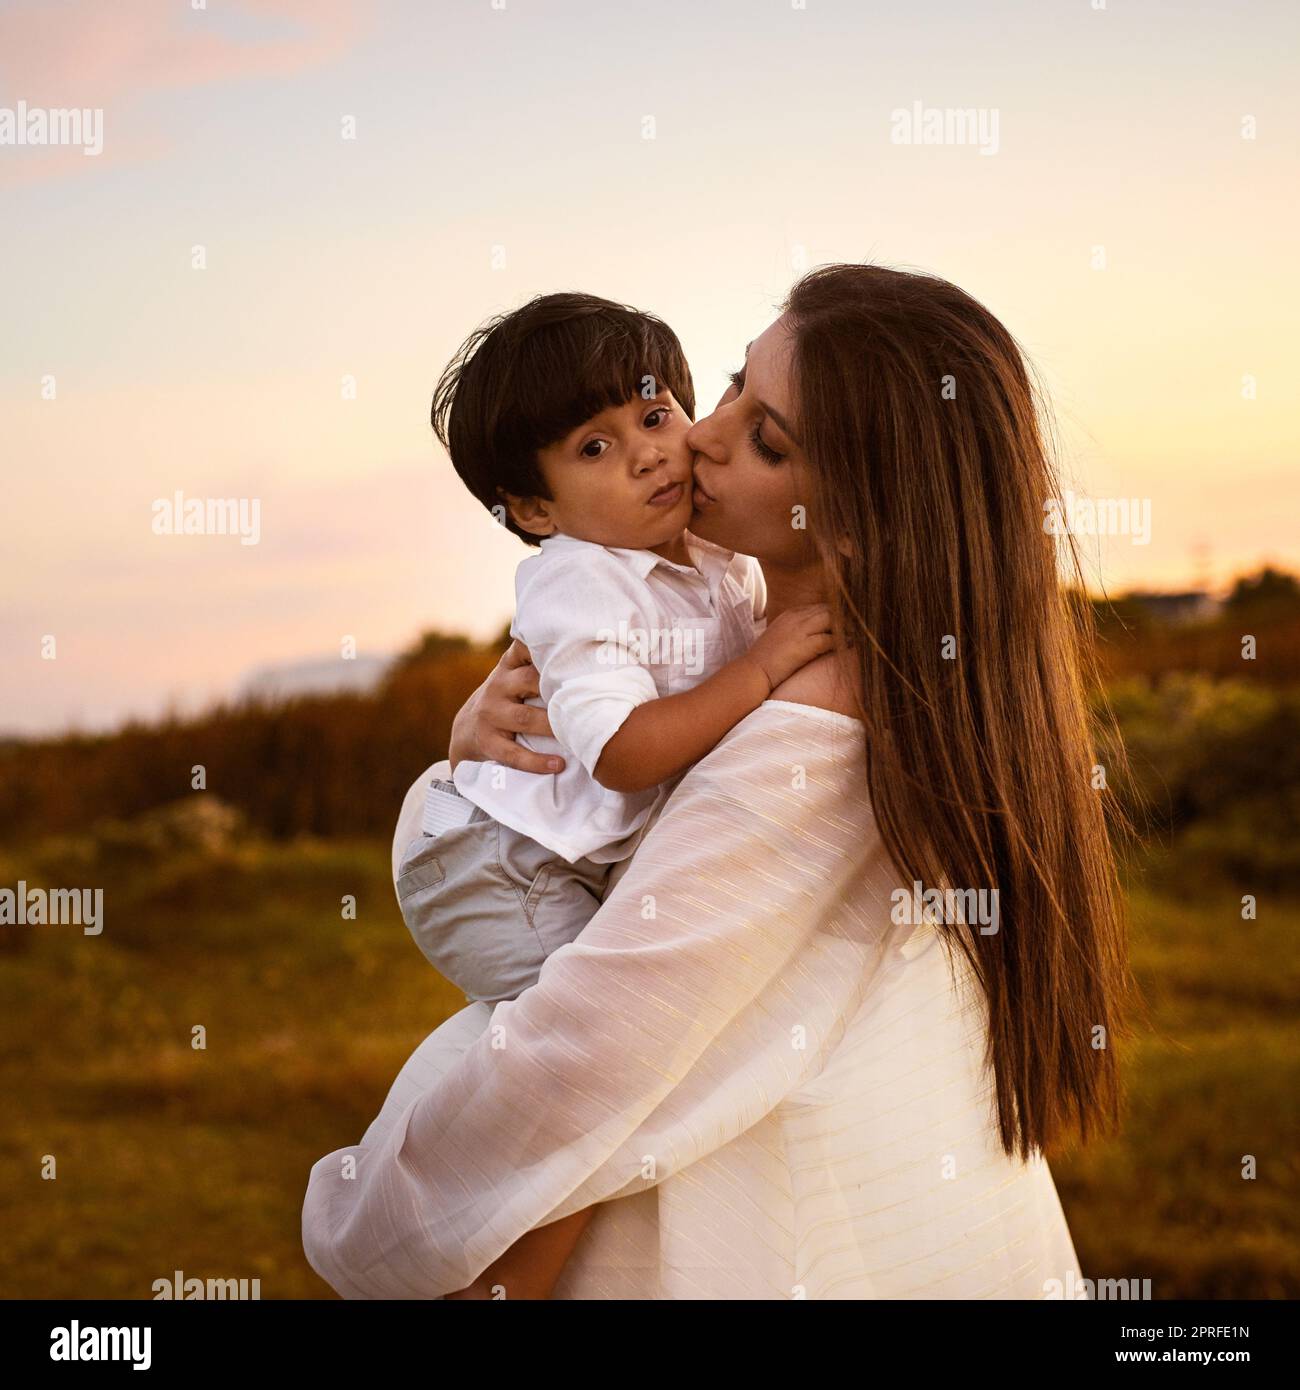 Mutter und Sohn, eine Bindung, die nie gebrochen werden kann. Eine junge Mutter küsst ihren Sohn auf der Wange im Freien. Stockfoto